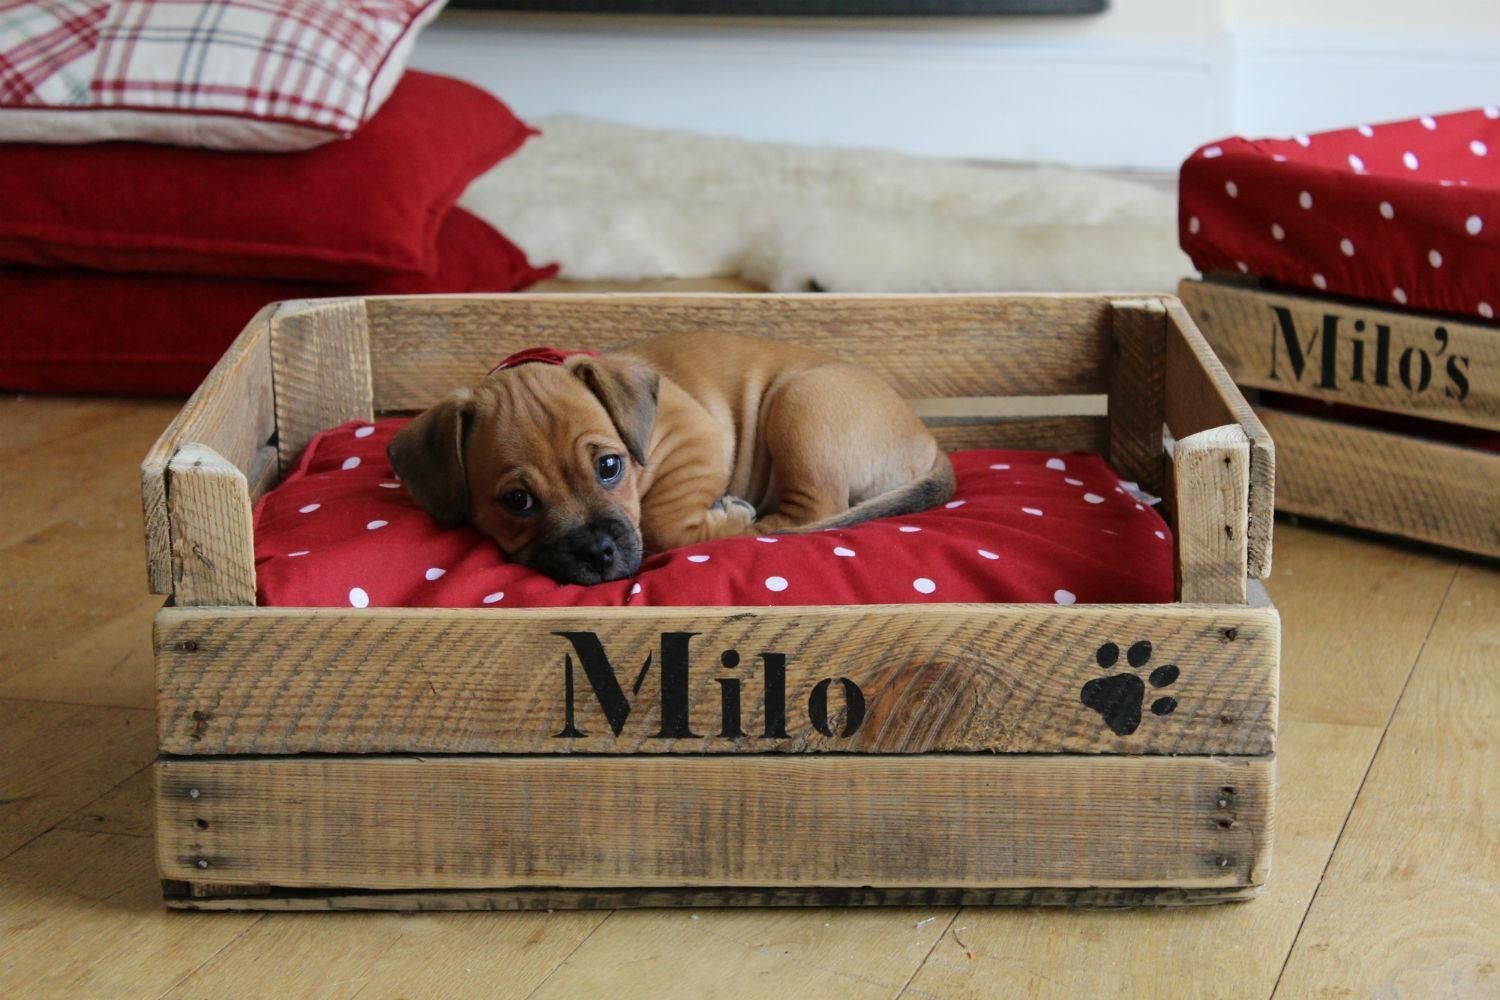 Лежанка для собаки своими руками: мягкие тканевые гнёздышки и миниатюрные деревянные диваны